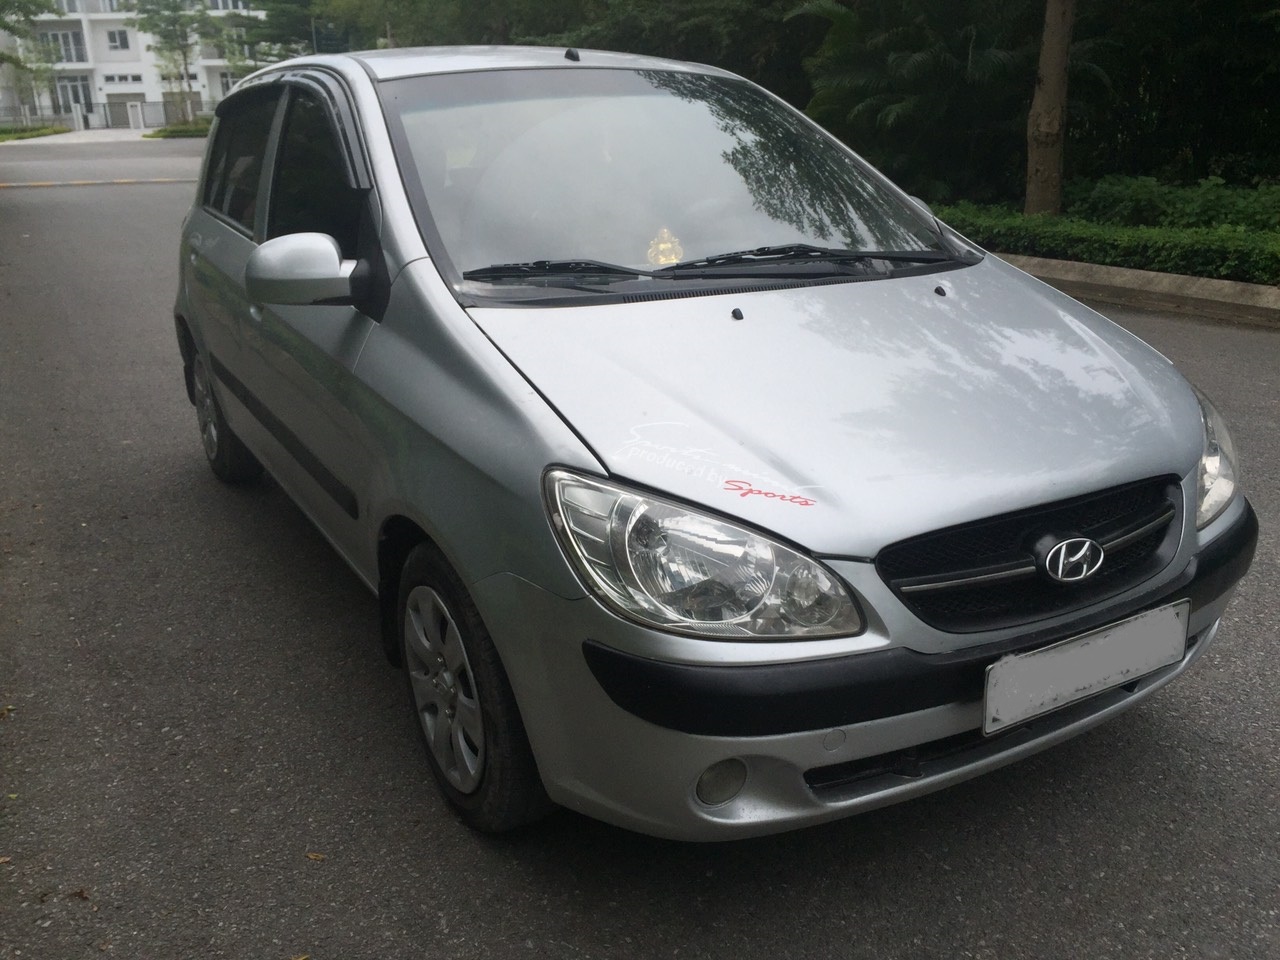 Bán Hyundai Getz MT 1.1 2010, màu bạc, nhập khẩu, 187tr-2